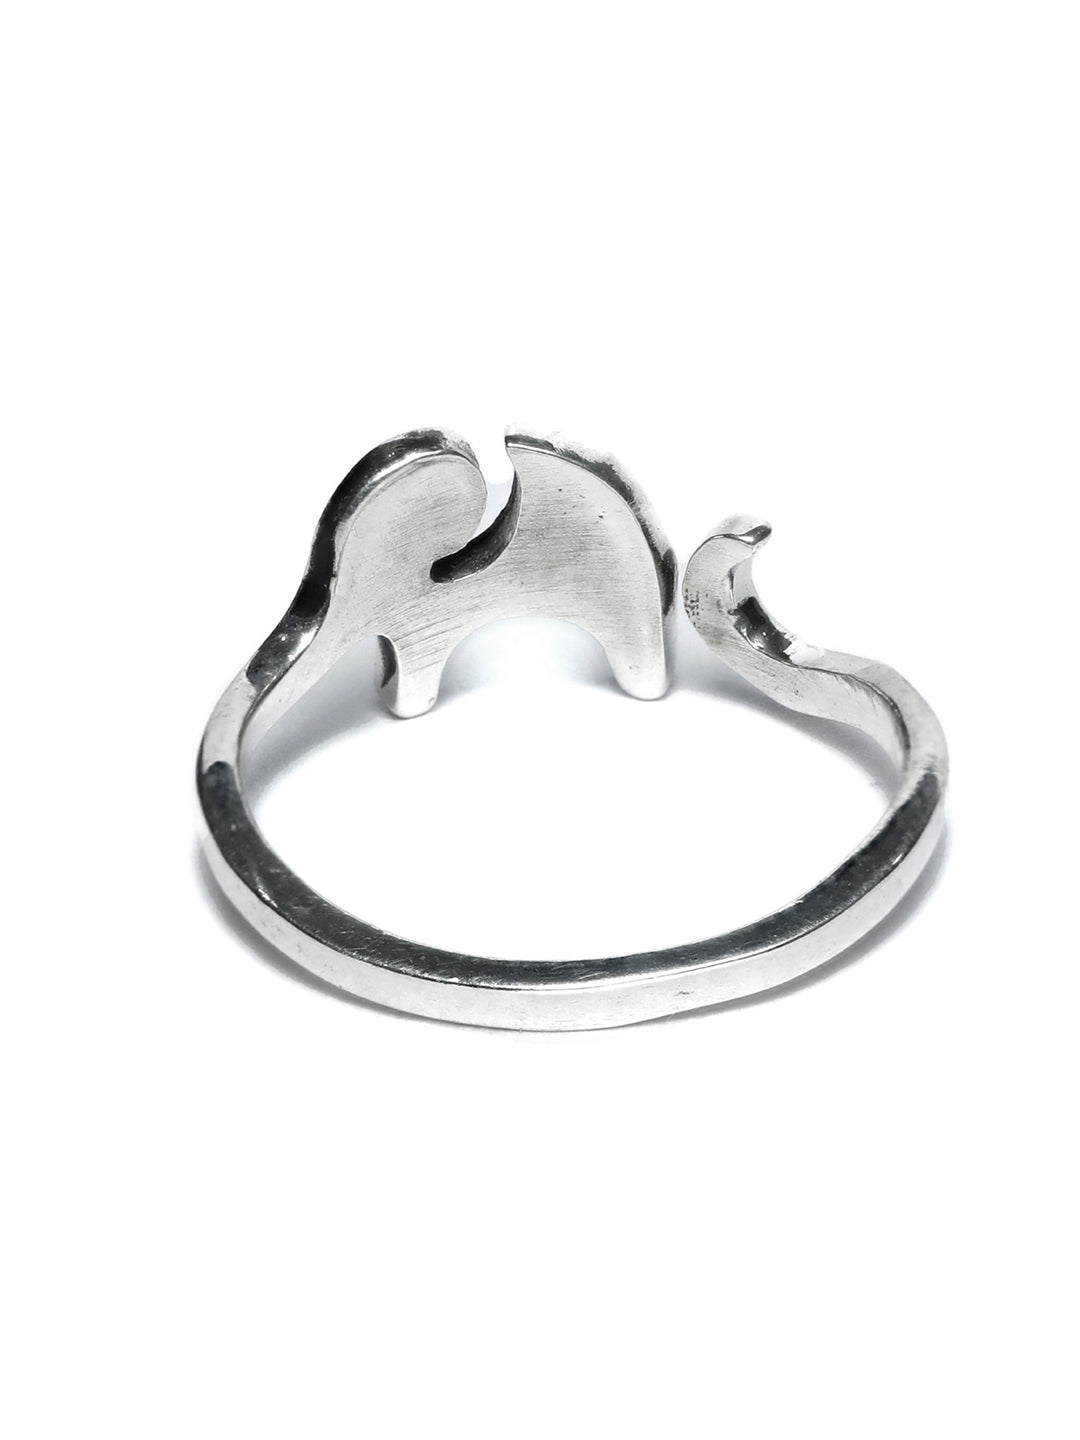 Oxidised Silver Elephant Ring